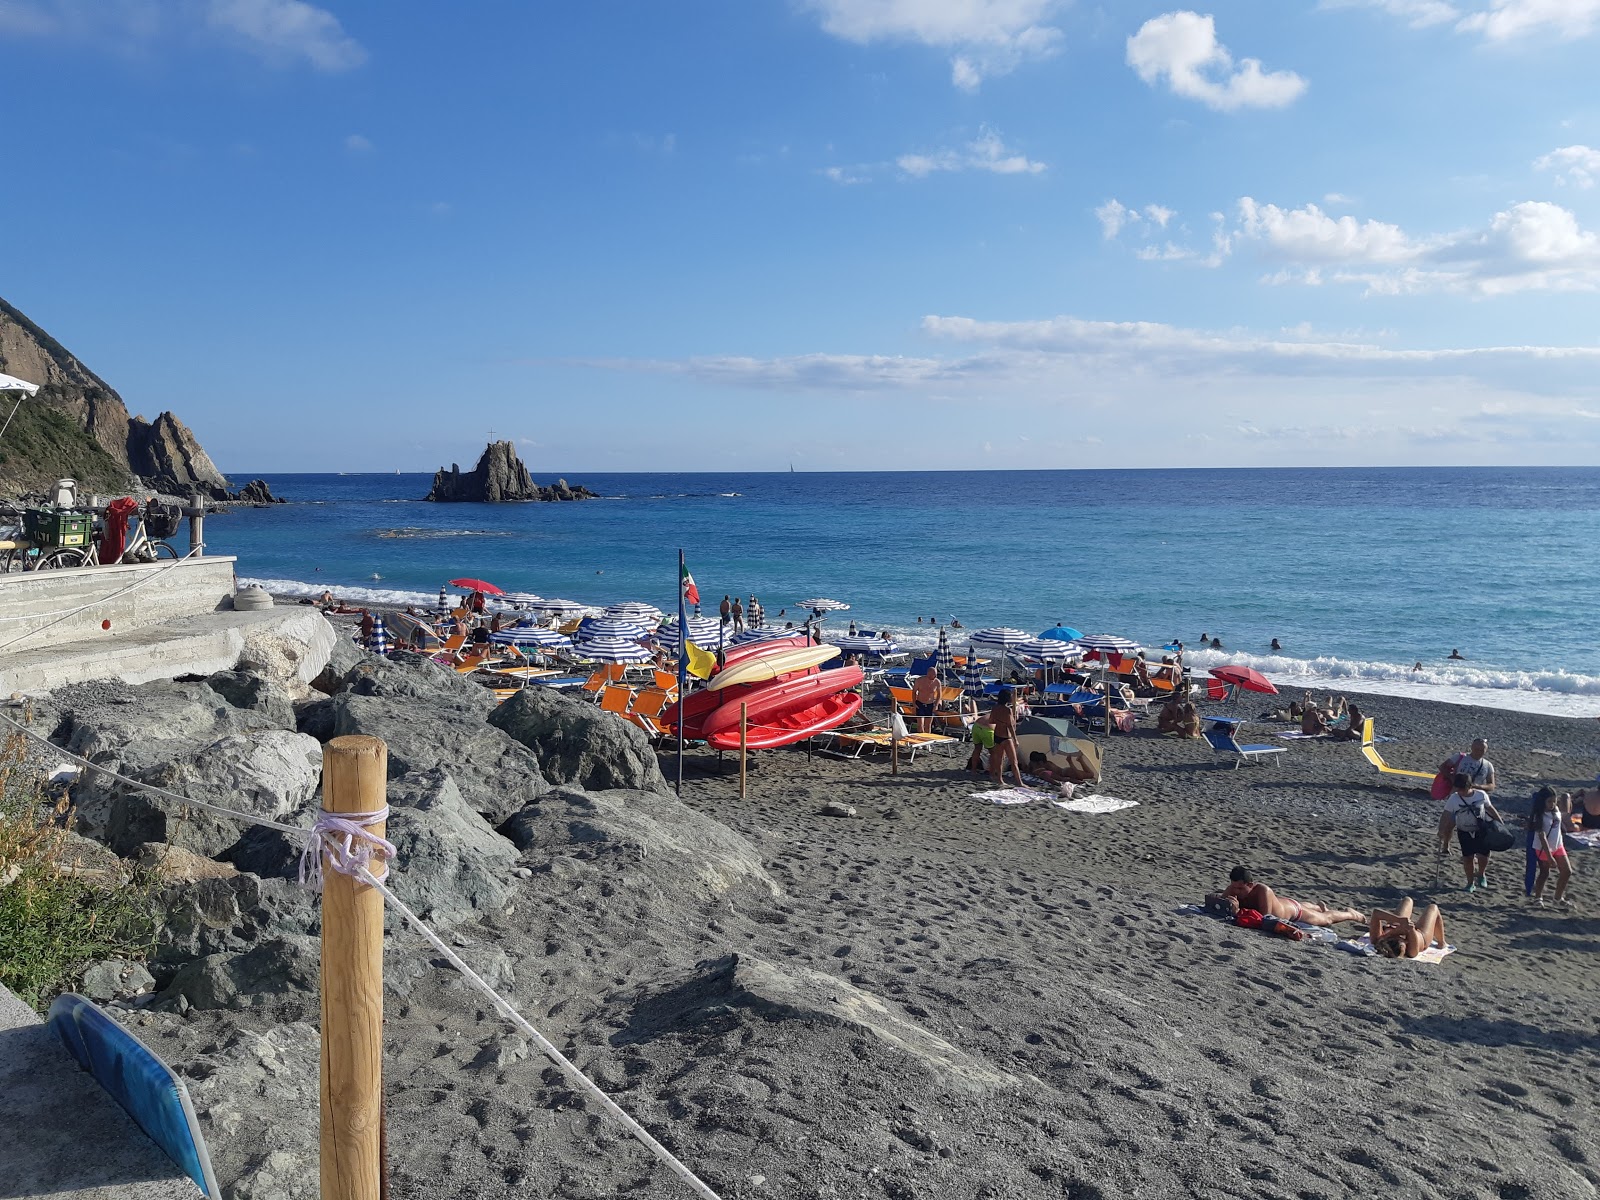 Foto von Spiaggia Riva Trigoso wilde gegend